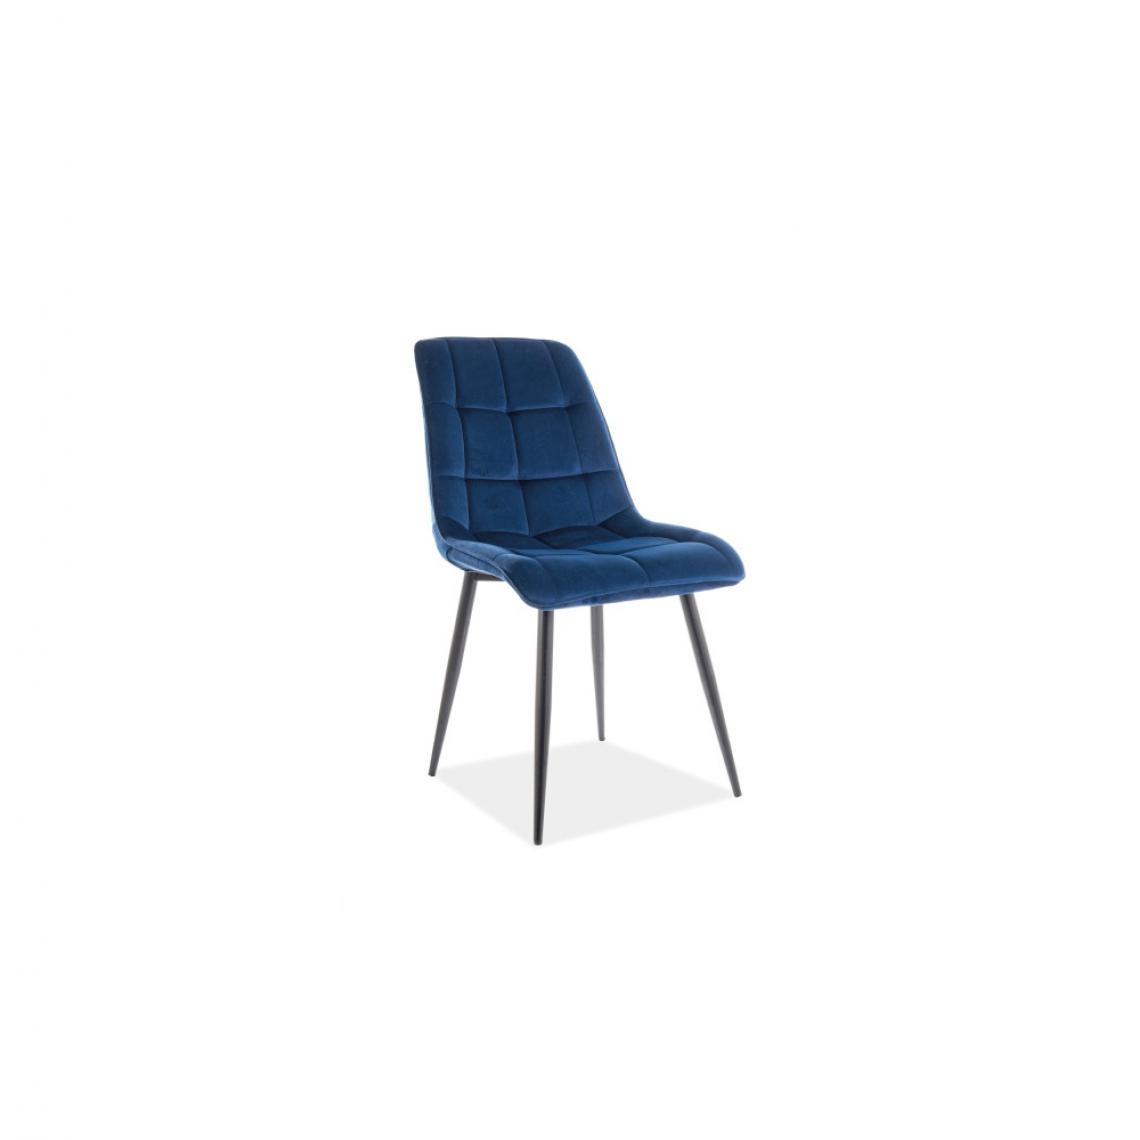 Ac-Deco - Chaise chic en velours - L 51 x P 44 x H 89 cm - Bleu marine - Chaises